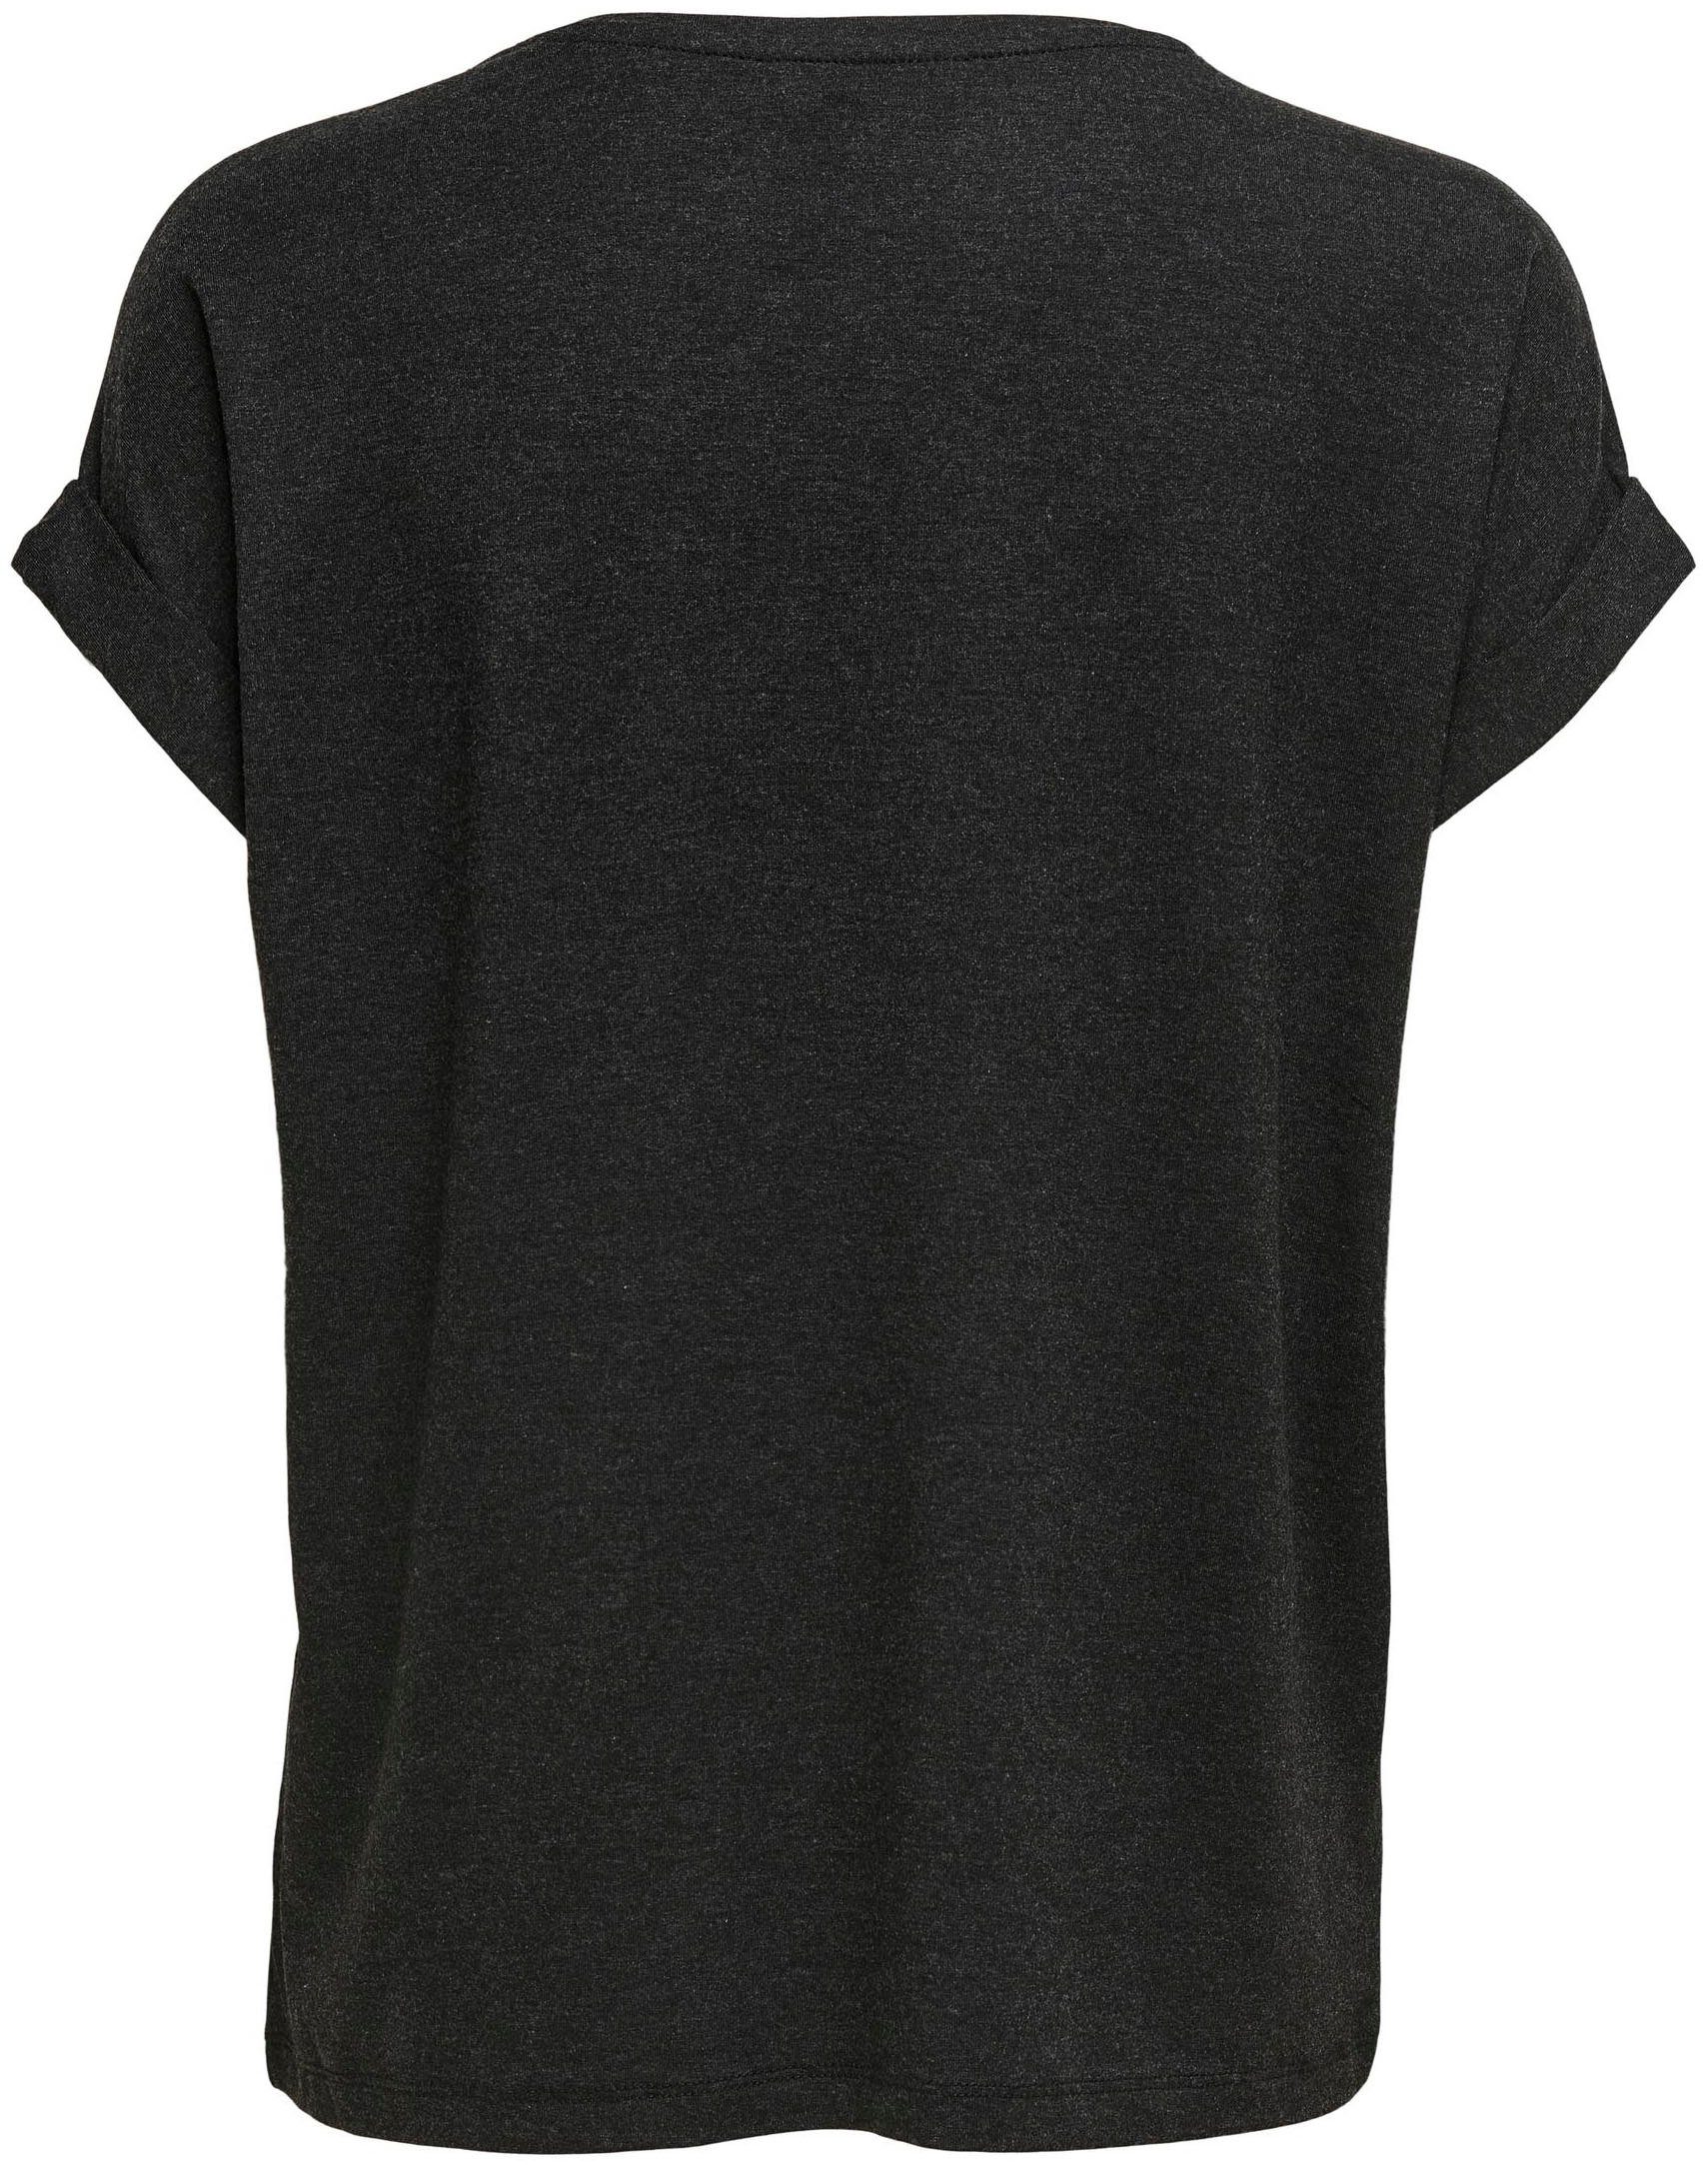 ONLY grey Aufschlag dark mit ONLMOSTER Arm am melange T-Shirt